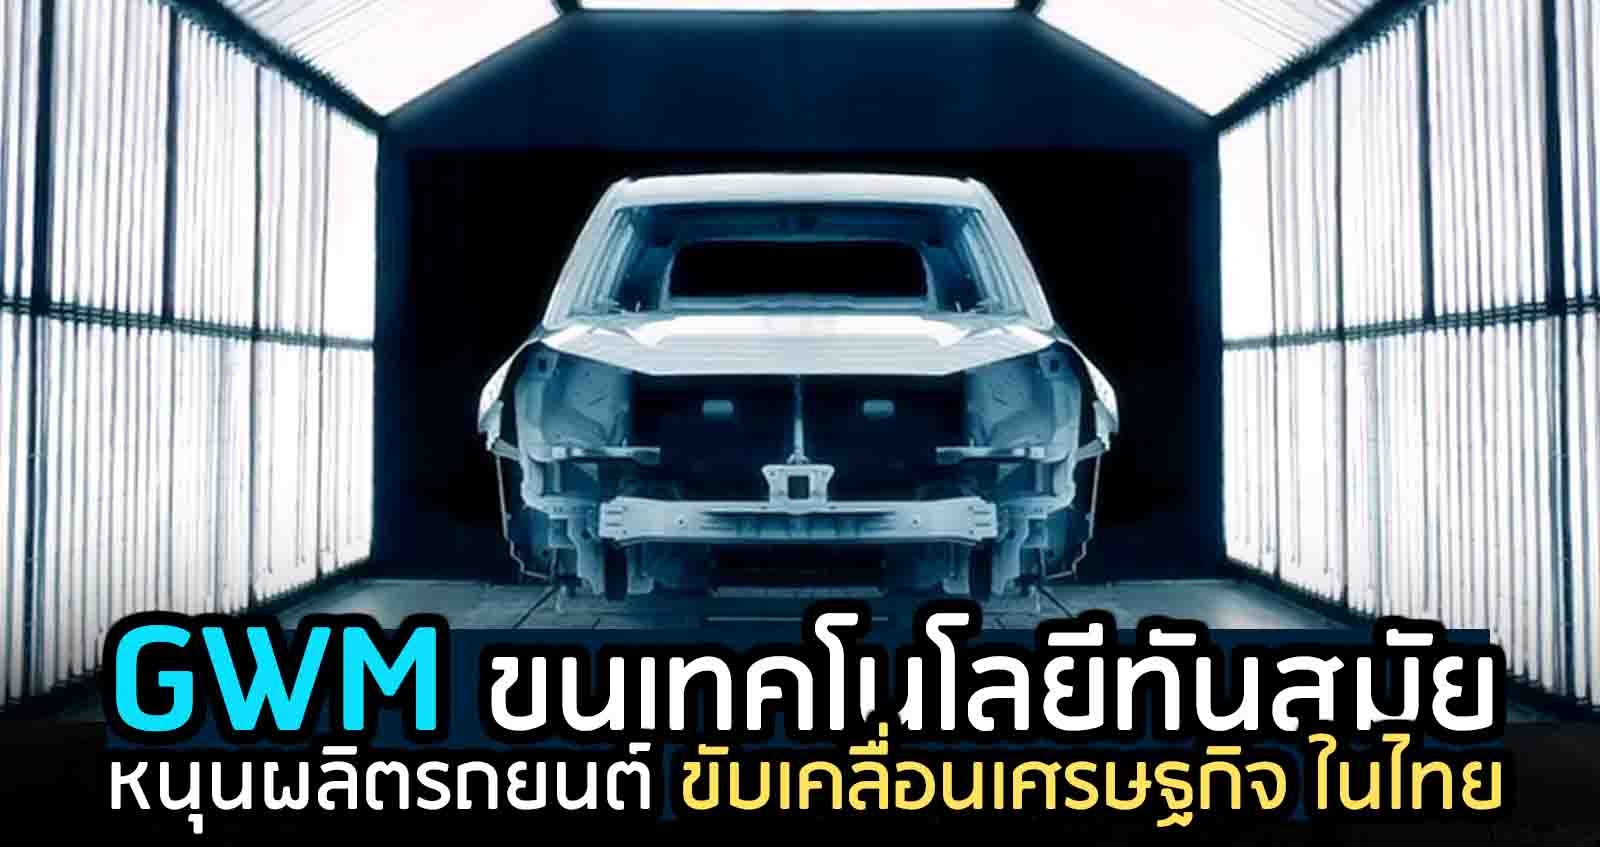 เกรท วอลล์ มอเตอร์ ขนทัพเทคโนโลยีใหม่ หนุนผลิตรถยนต์ กระตุ้นเศรษฐกิจ ในไทย